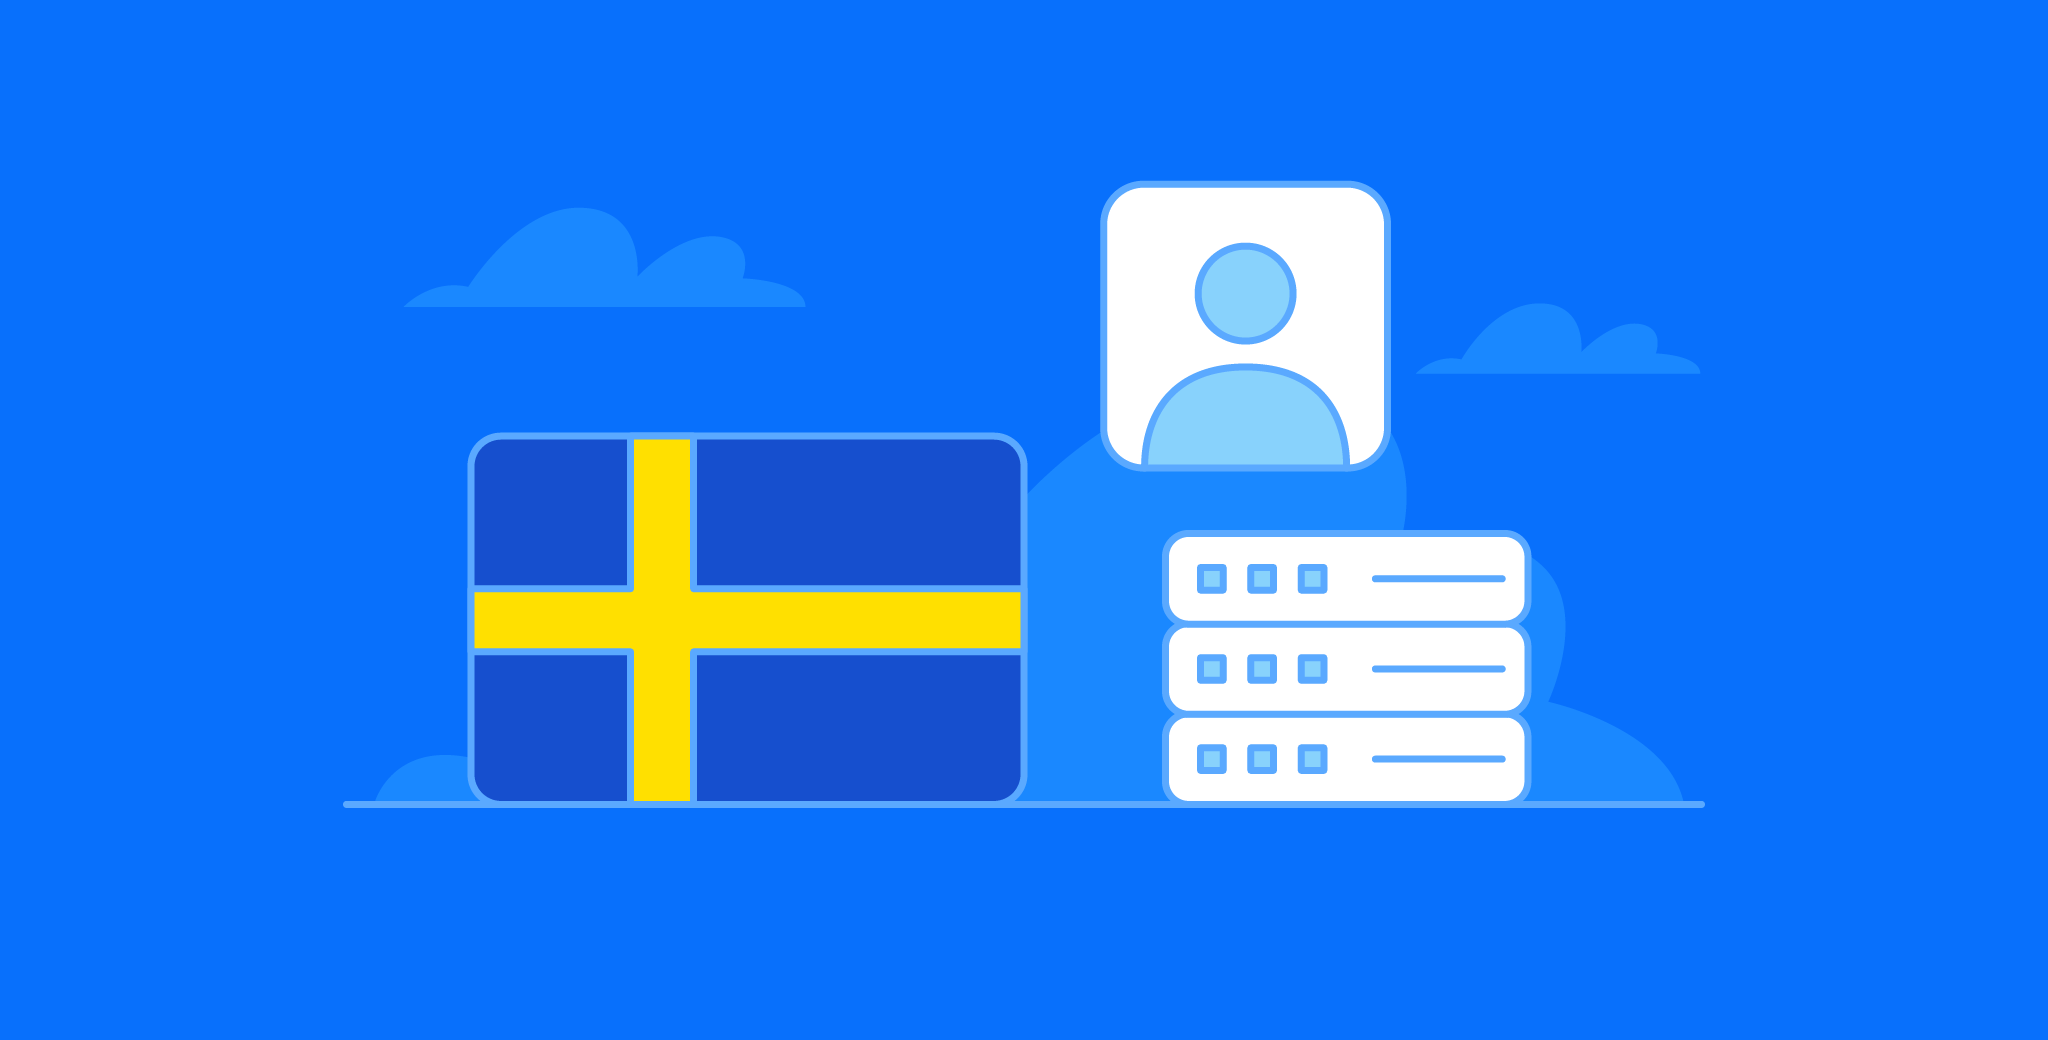 Sweden LinkedIn People Profile Dataset